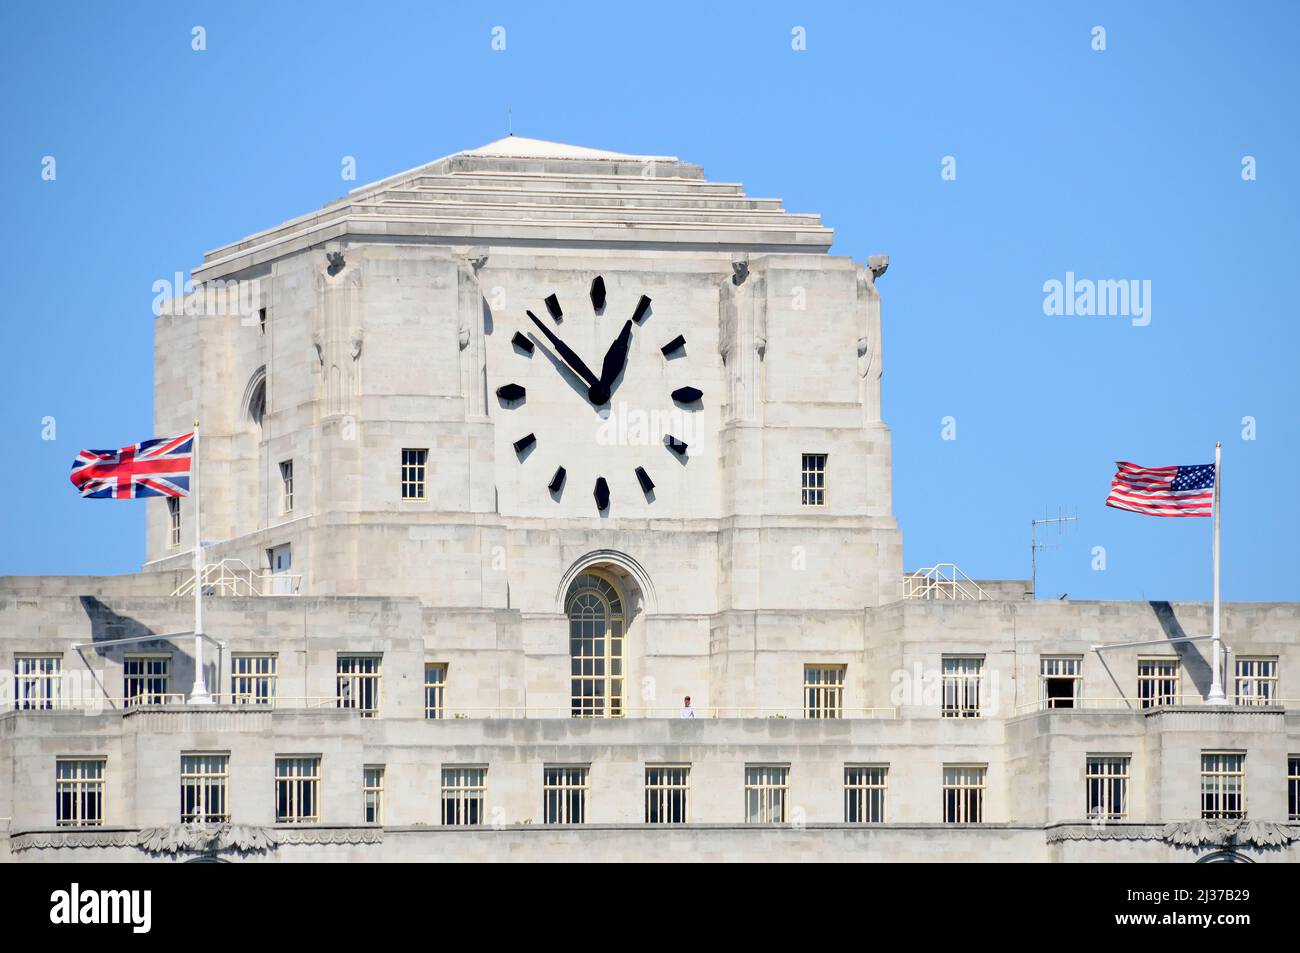 Le plus grand visage de l'horloge au Royaume-Uni Big Benzene sur Londres site Shell Mex House grade II bâtiment de bureau classé Union Jack & Stars & Stripes drapeaux Angleterre Royaume-Uni Banque D'Images